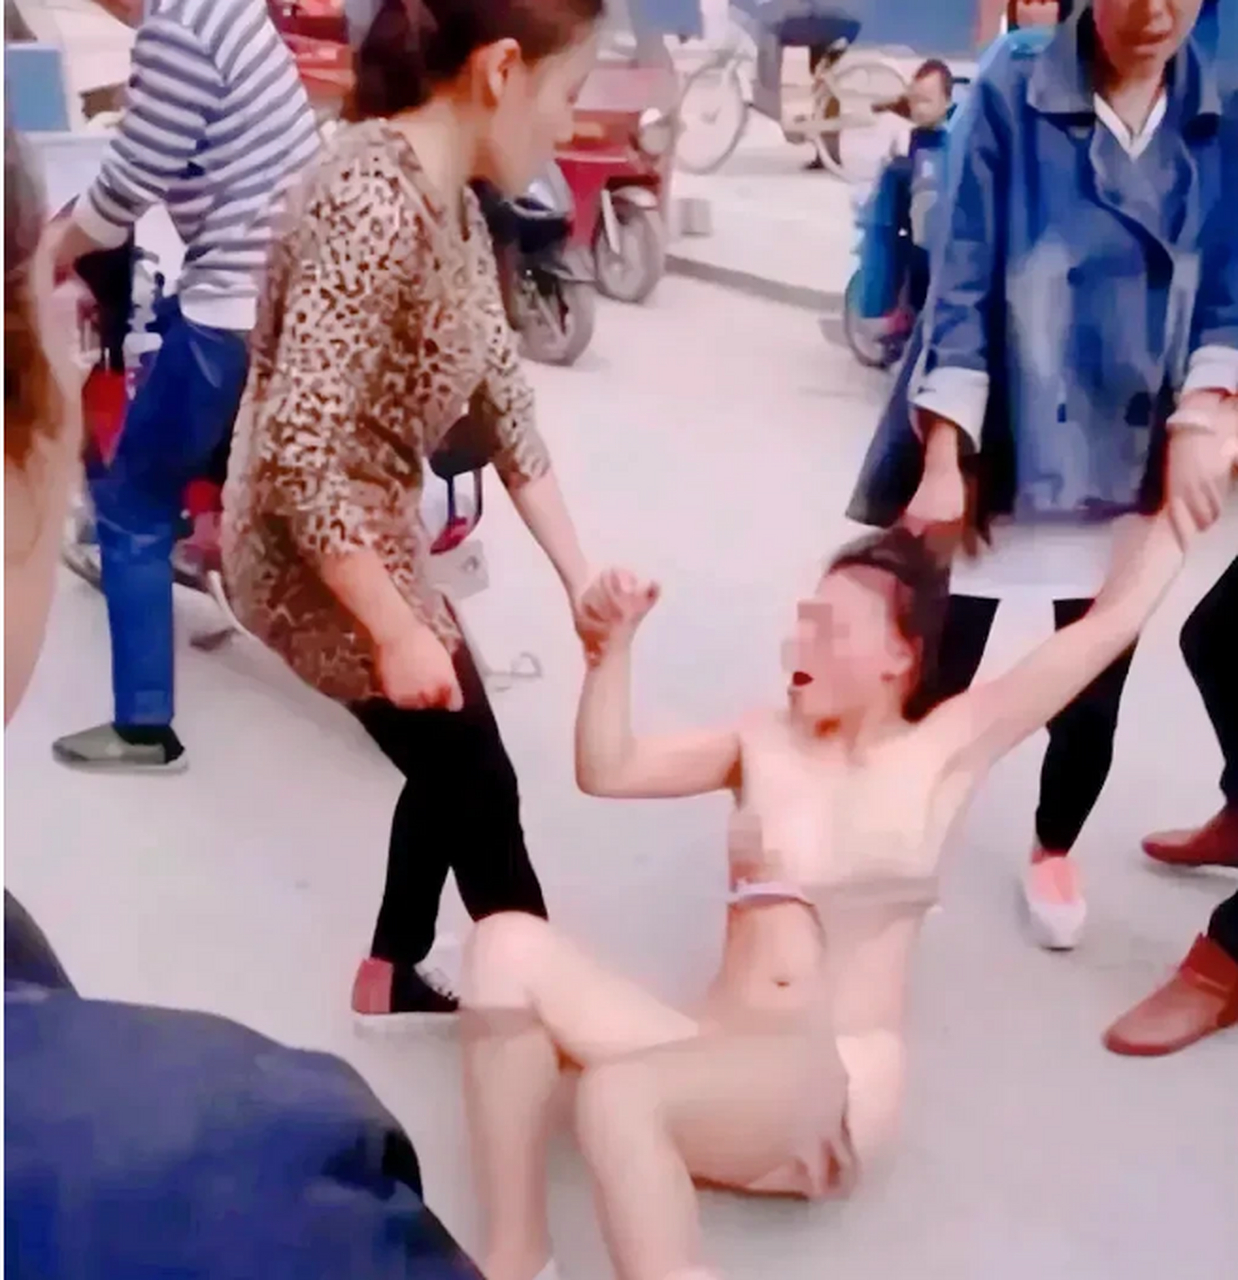 这一幕场景不堪入目,小三衣衫不整,躺倒在地上,几个女人拉着她的手